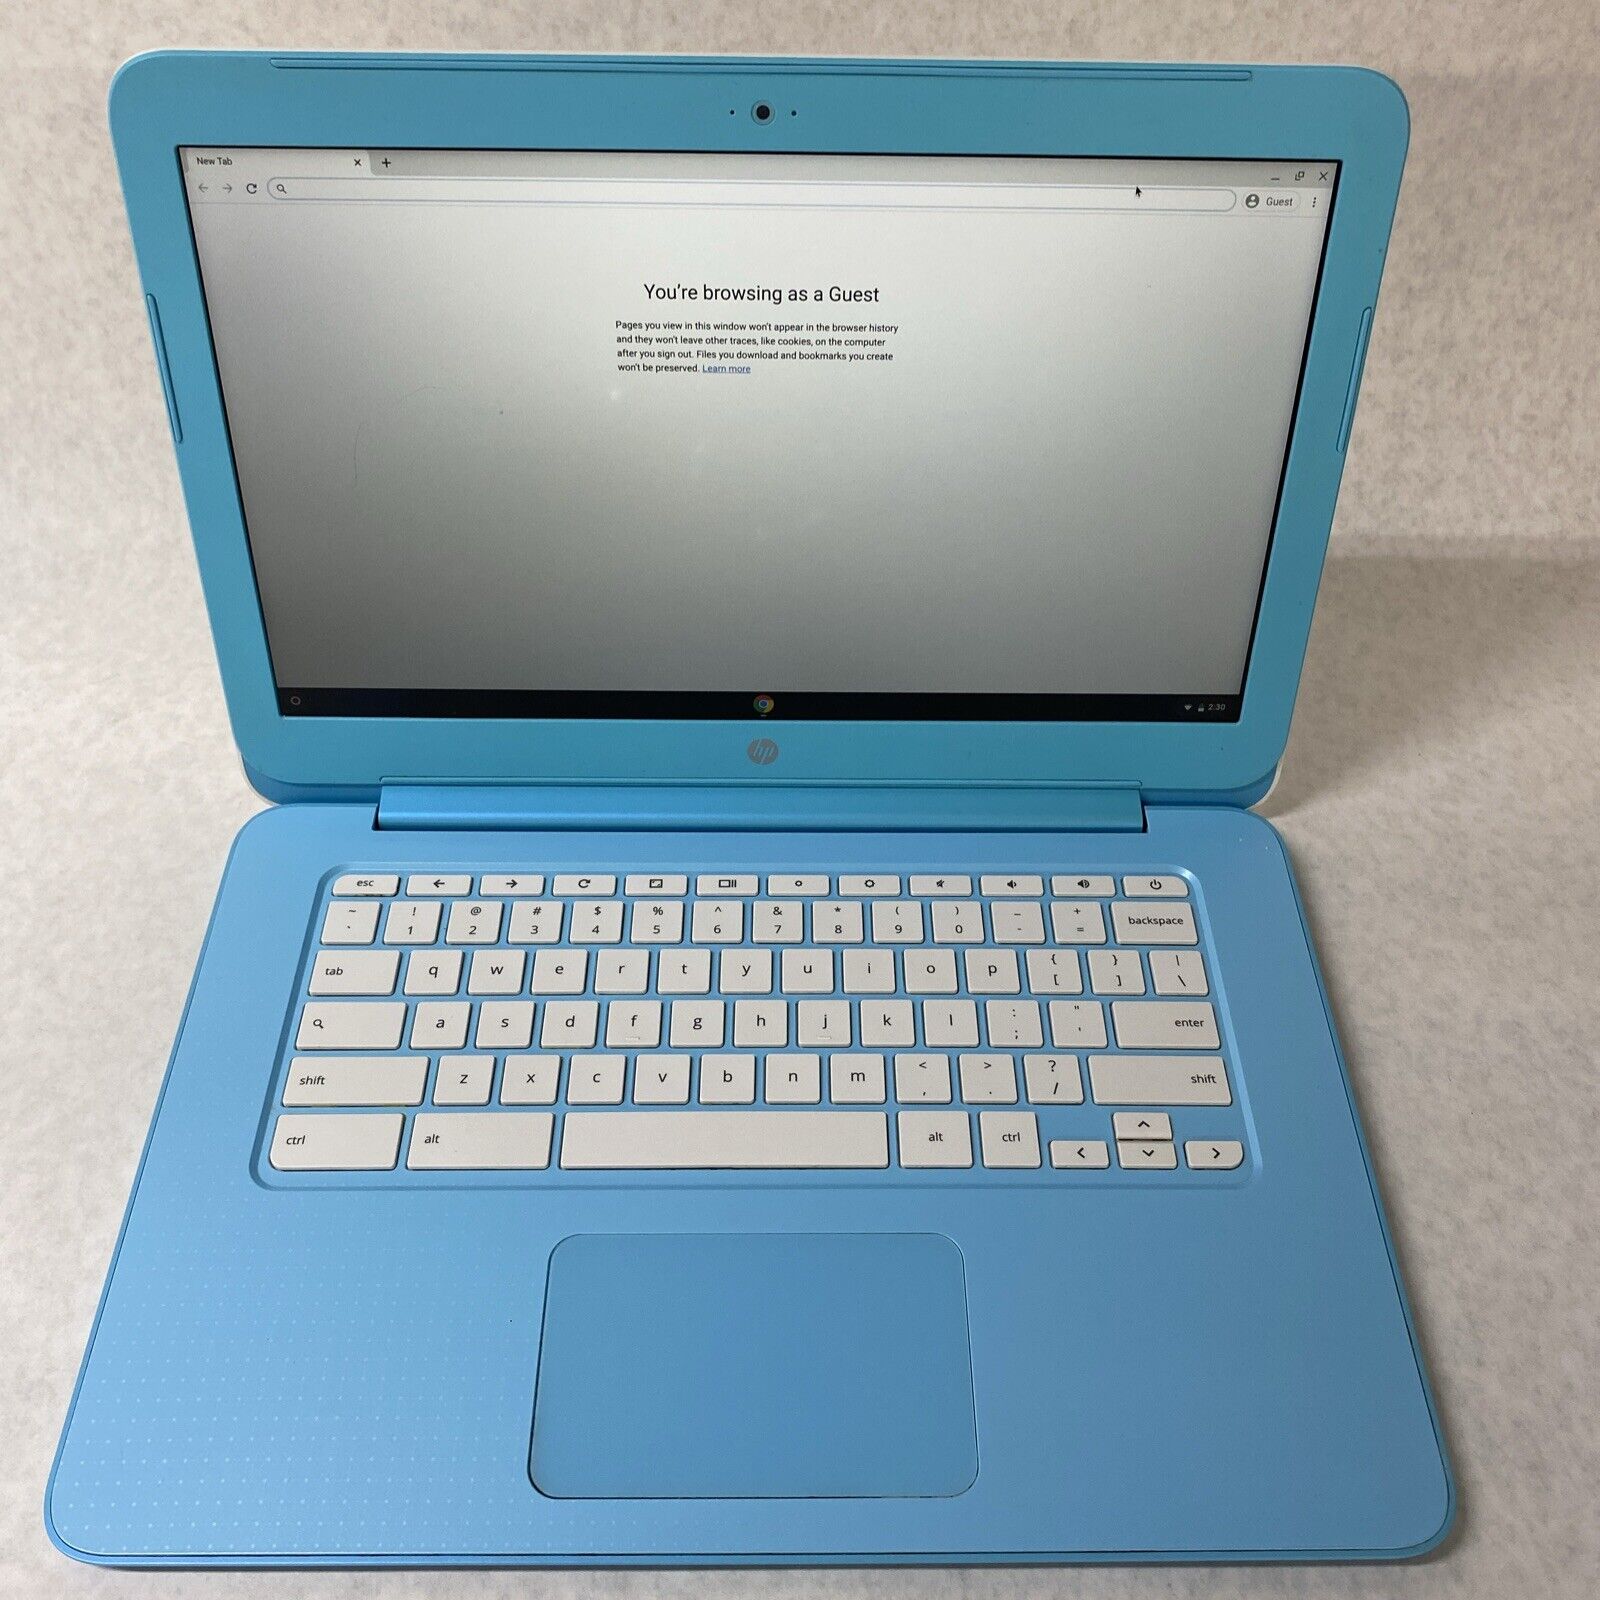 HP ChromeBook 14-ak060nr Intel Celeron 2940 1.83GHz 4GB RAM 16GB No AC Adapter